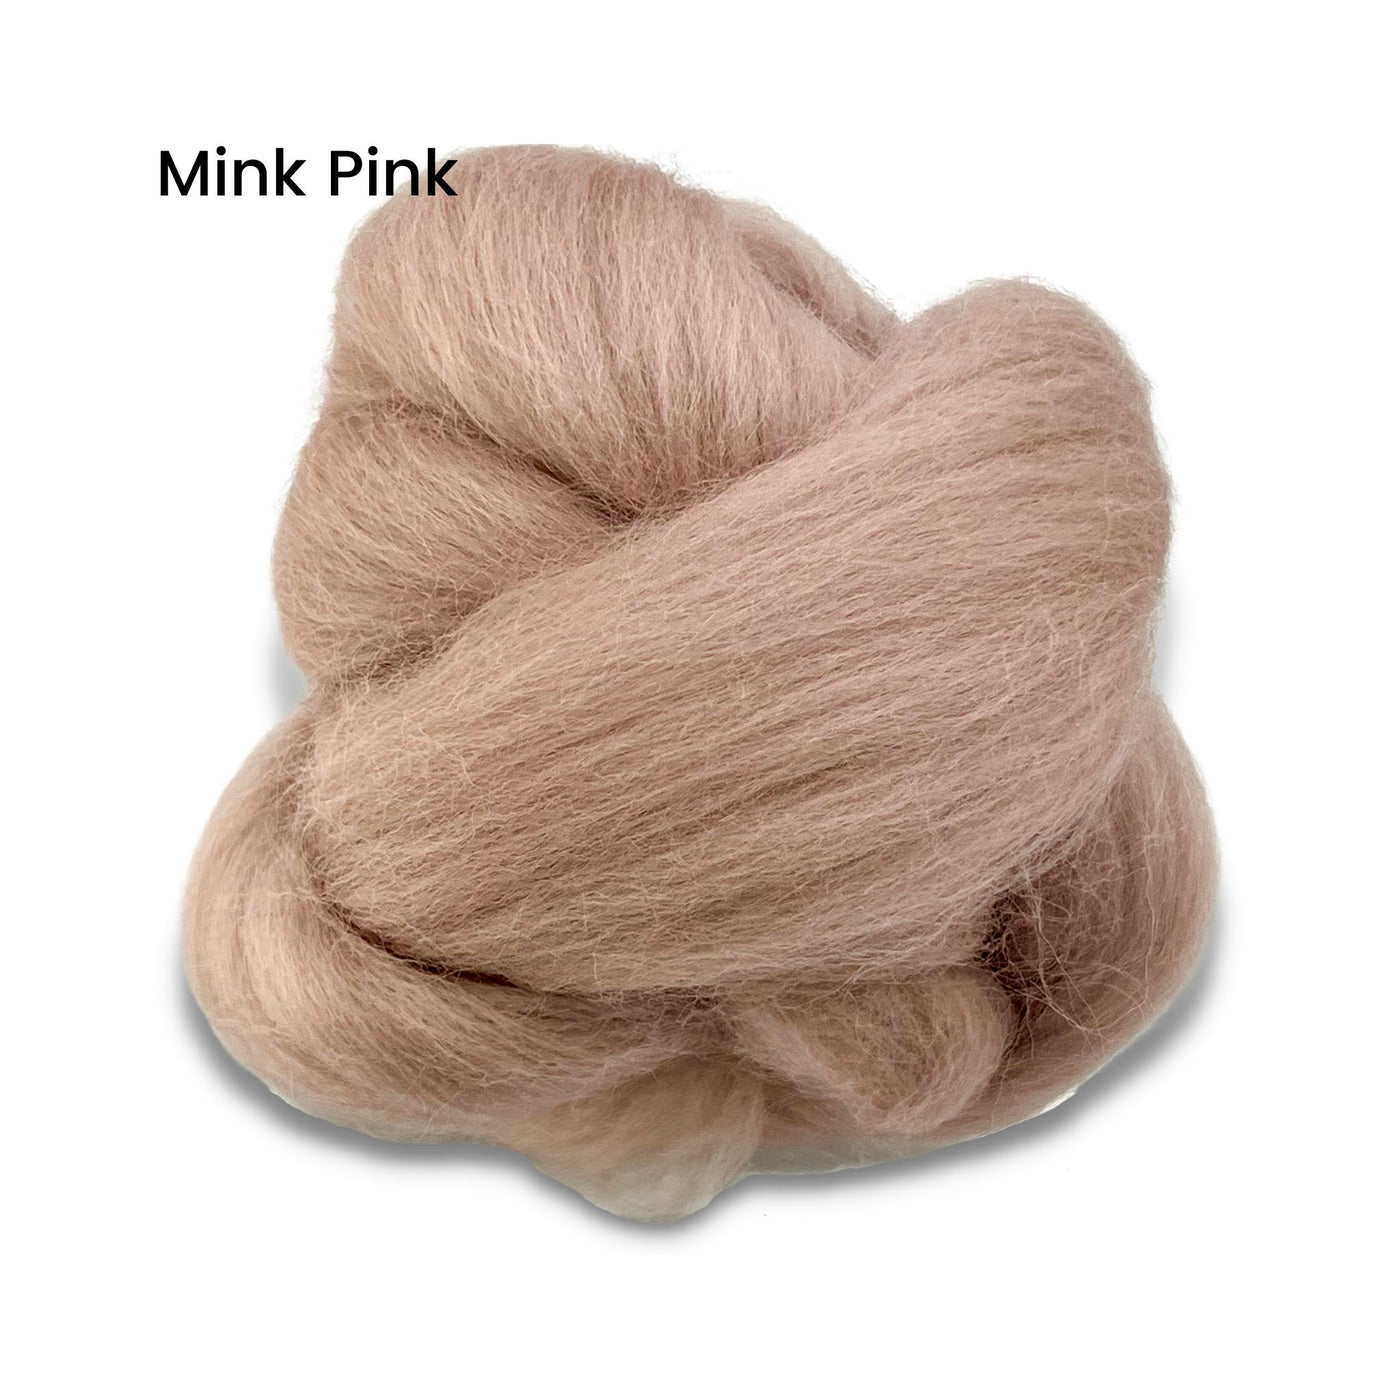 Mink Pink Corriedale Wool Roving Top